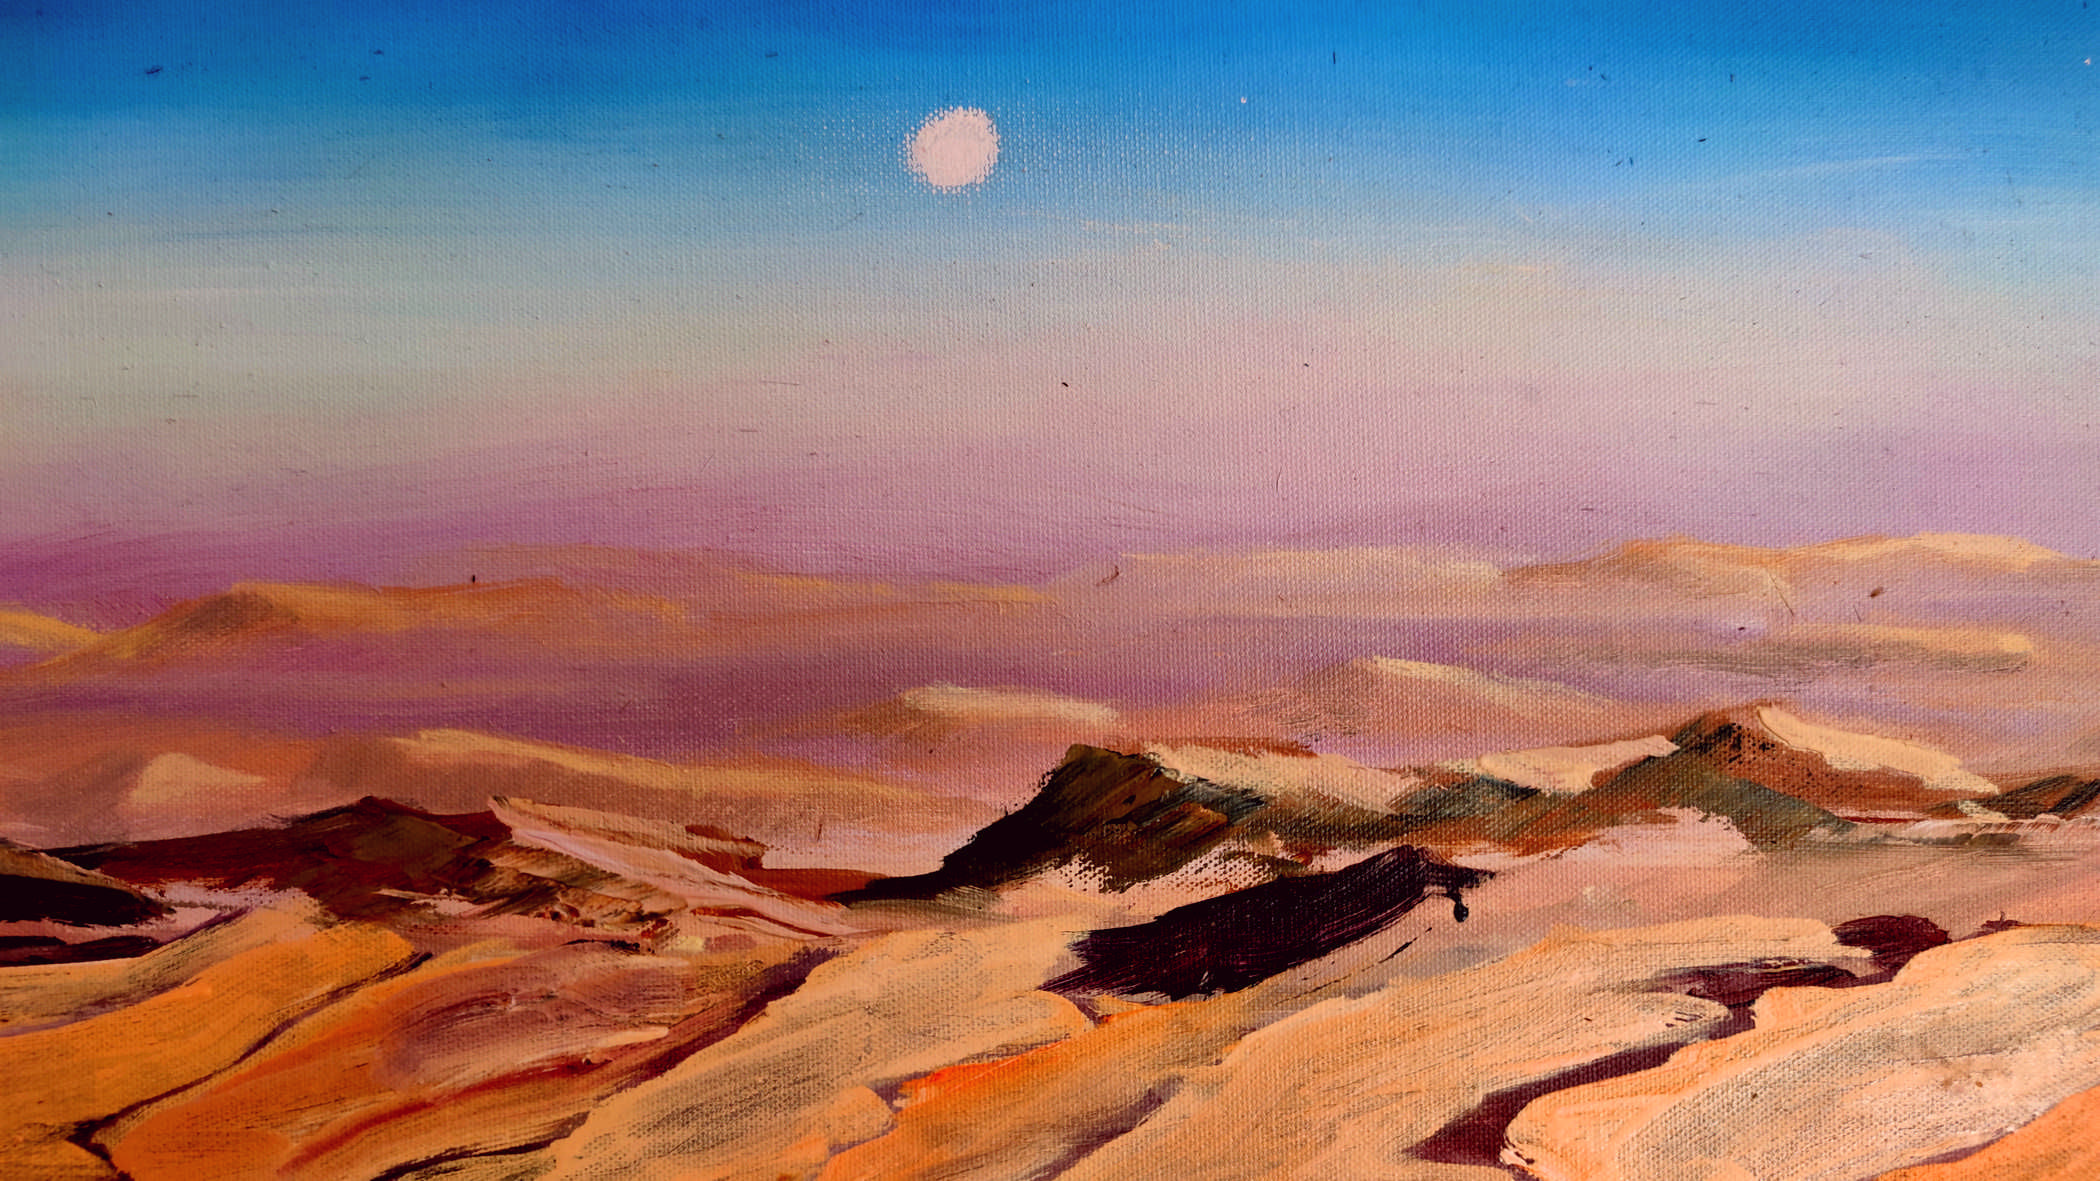 Israelgemälde in der Wüste Negev, oil painting israel